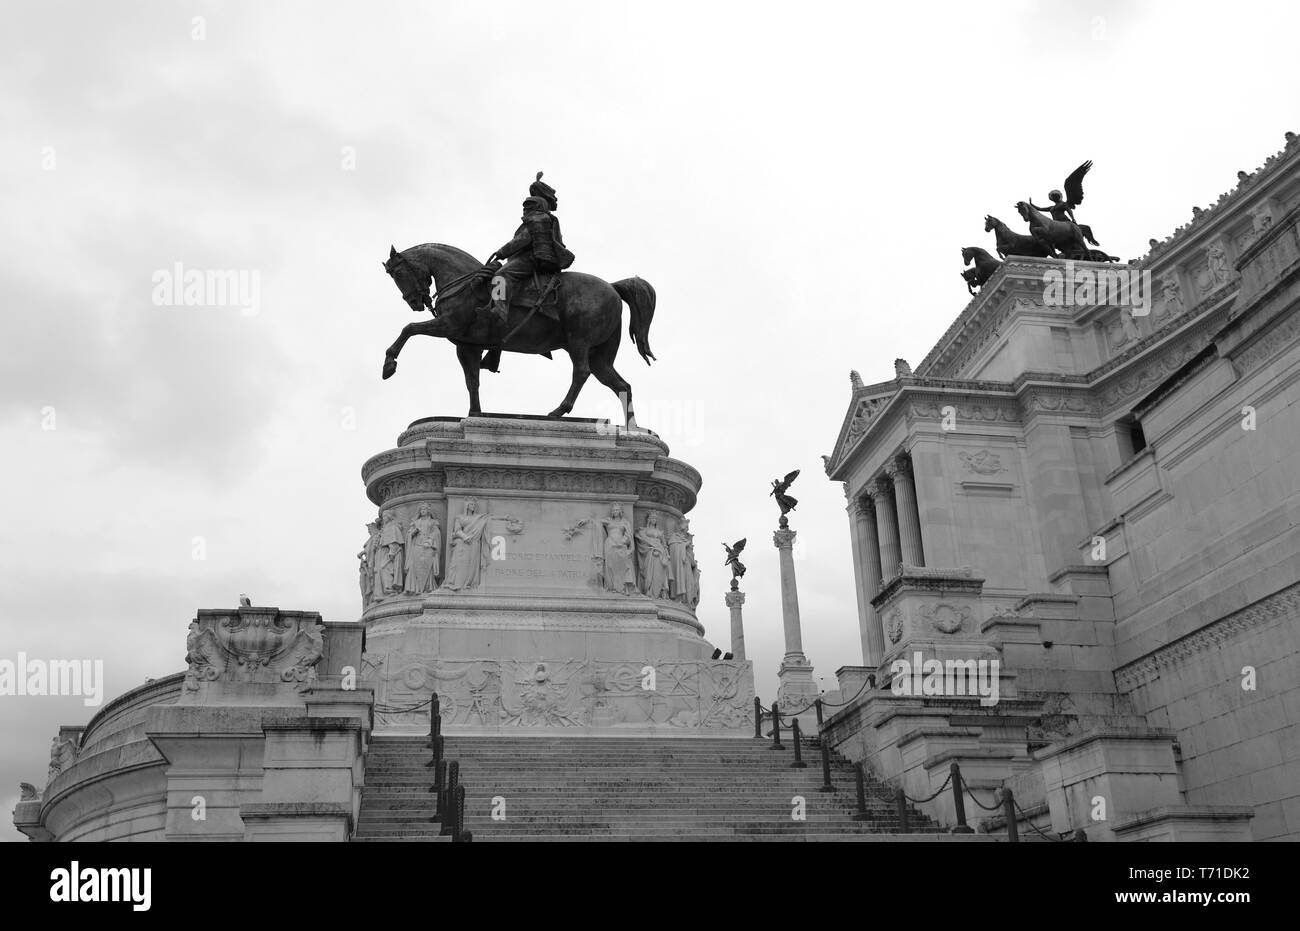 Grande statue équestre de Victor Emmanuel II d'Italie à Rome sur le grand monument appelé Altare della Patria Banque D'Images